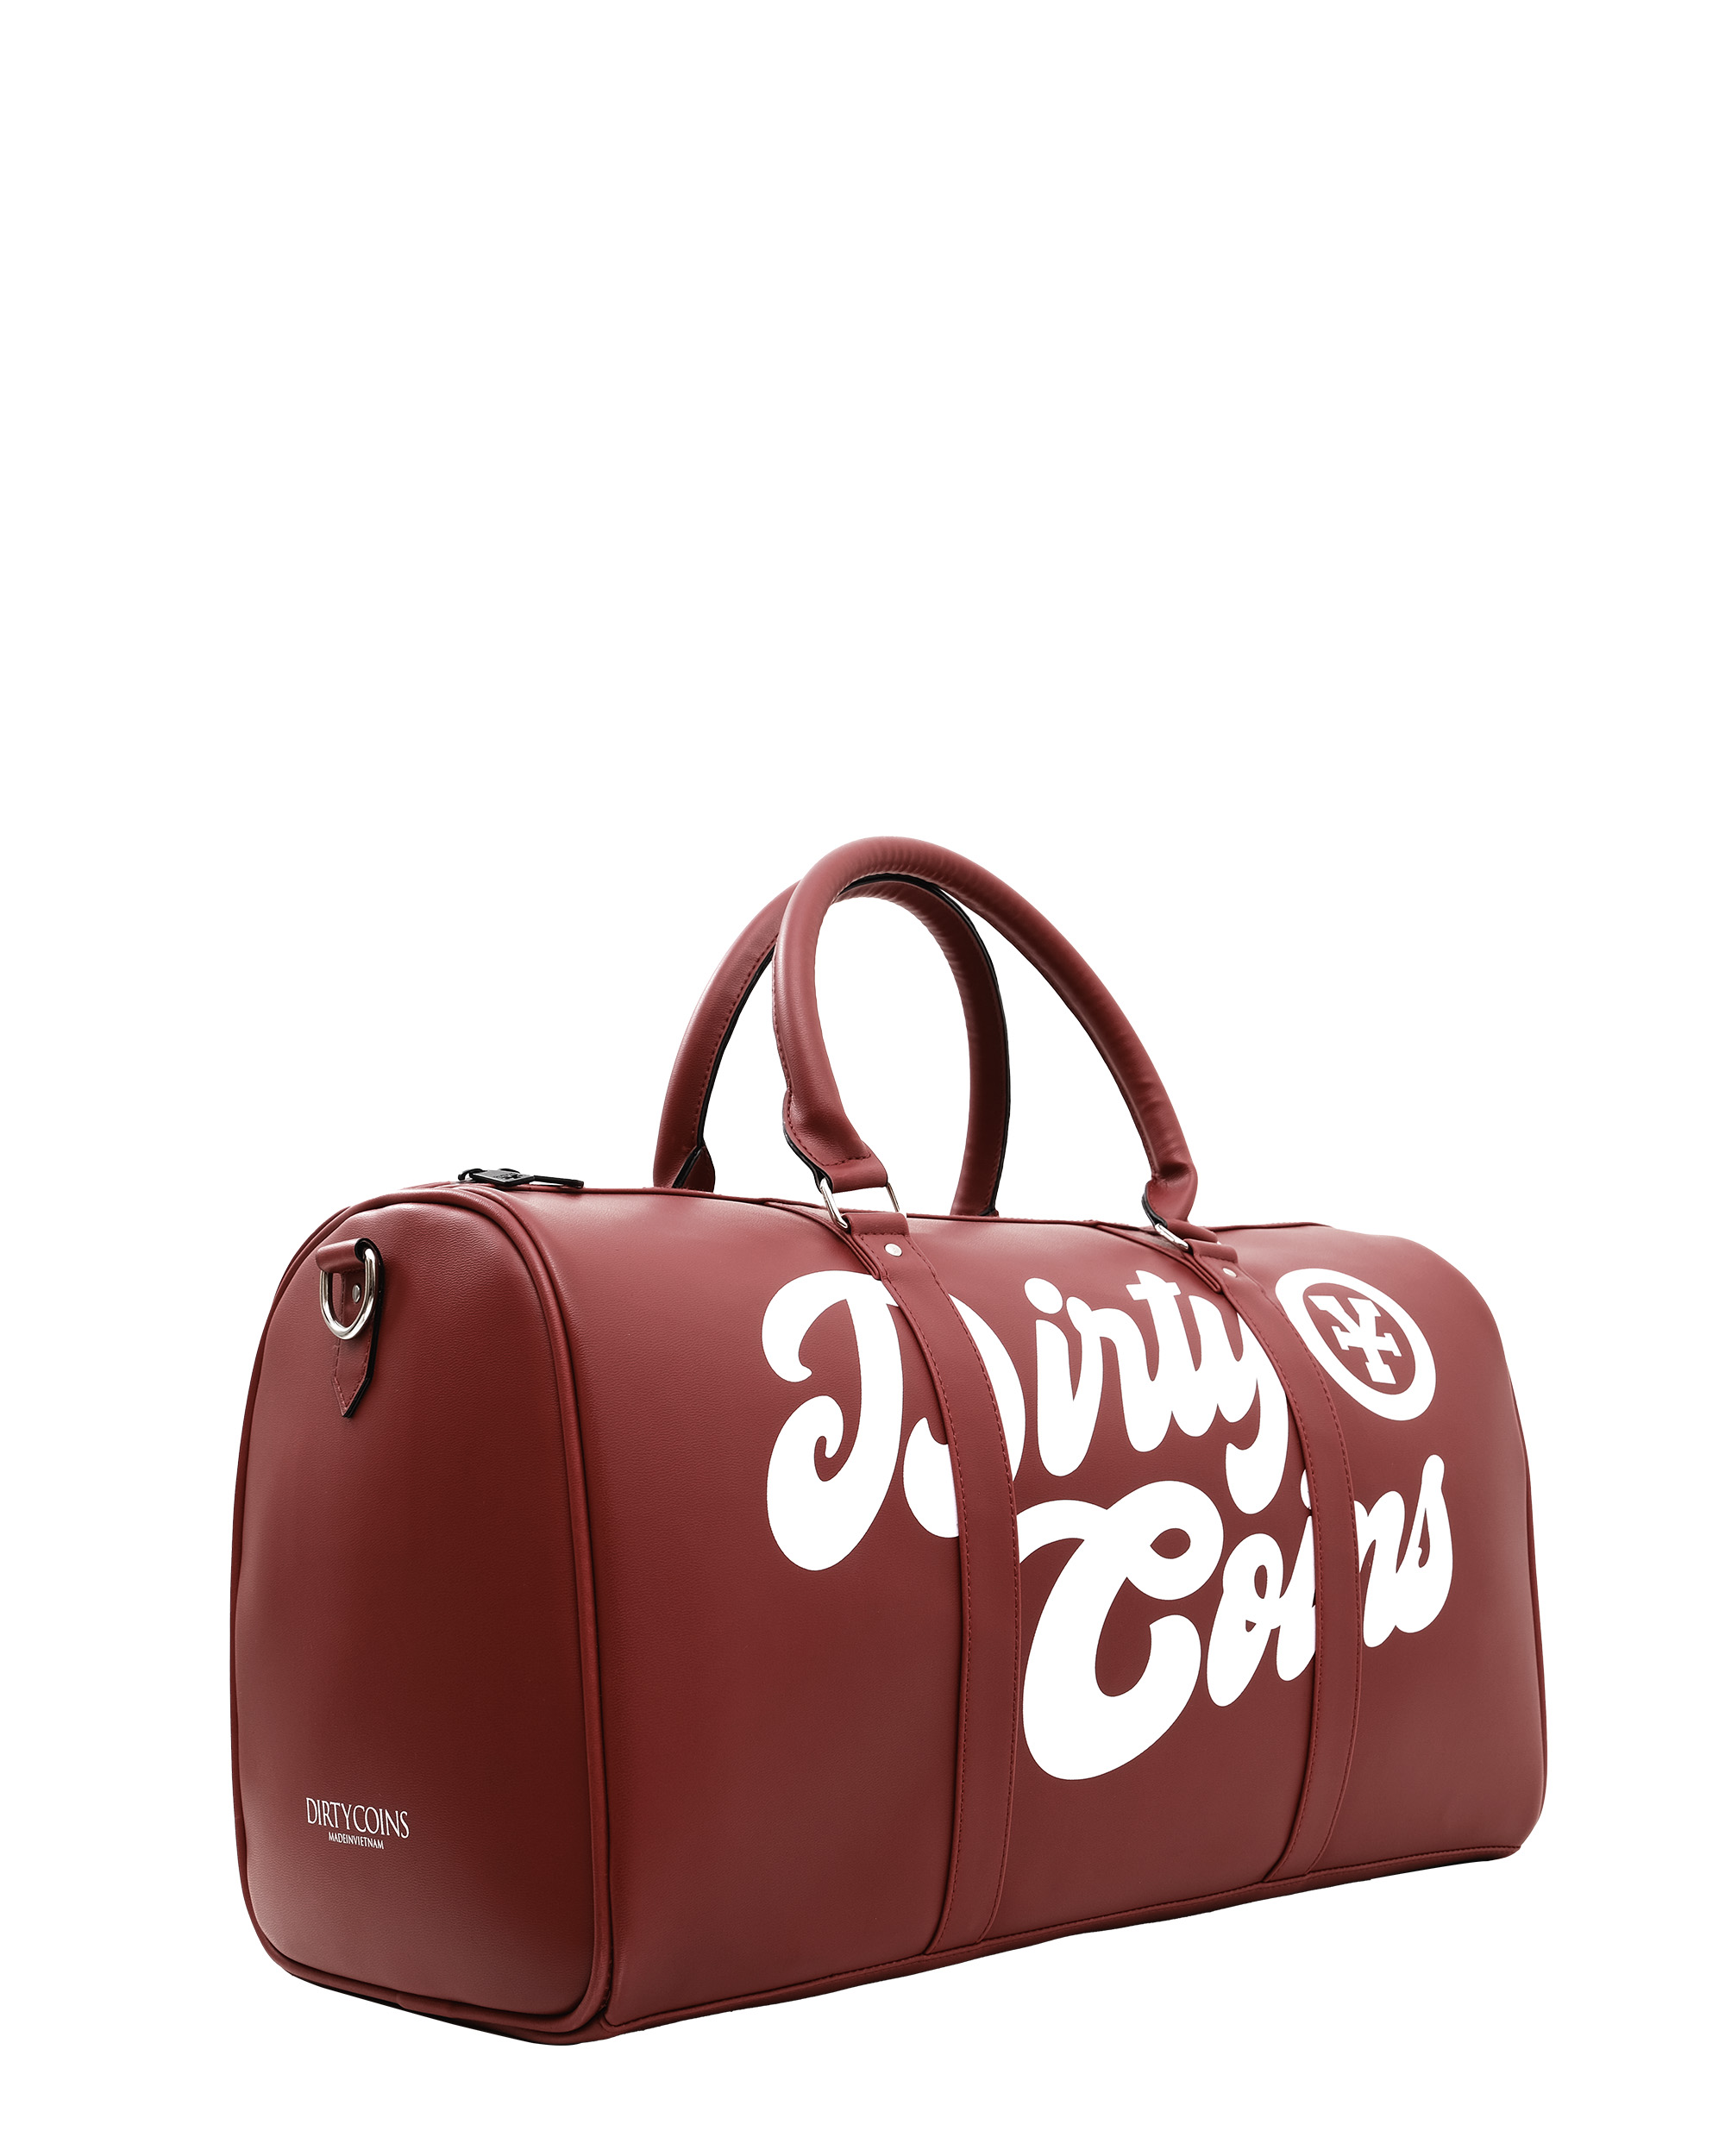 DirtyCoins Logo Bowler Bag - Red